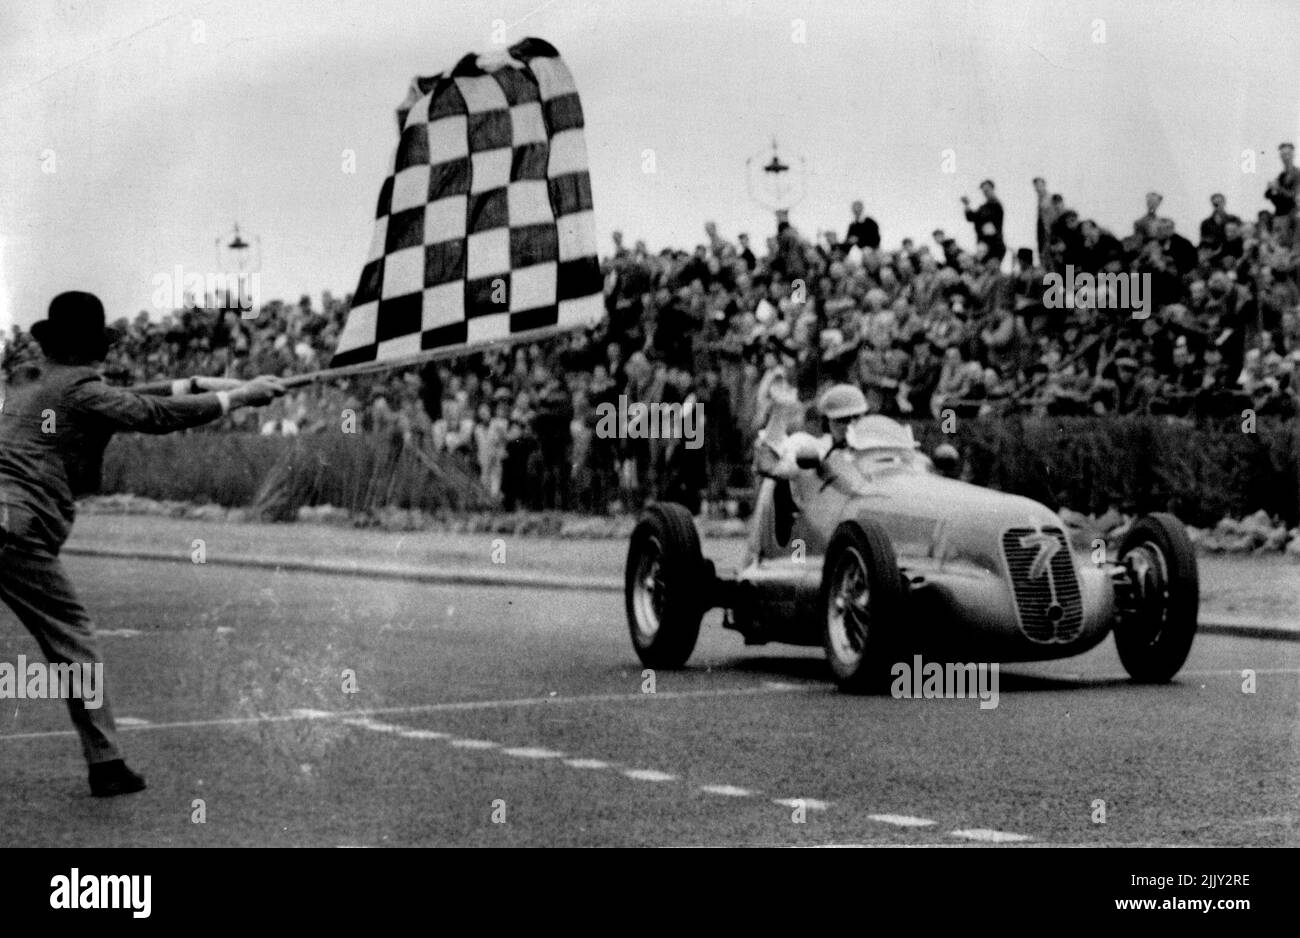 Briton vince la gara stradale internazionale a Jersey -- R. Parnell, di Derby, (Inghilterra) guidando alla super carica 1½ Litre Maserati vincendo la corsa stradale internazionale di 160 miglia a St. Helier, Jersey, maggio 8 ad una velocità media di 84,52 MPH. Louis Chiron (Francia) uno dei team Maserati è stato secondo con Raymond Mays, guidando un terzo britannico E.R.A. Solo 14 dei 25 principianti hanno terminato il corso. Giugno 28, 1930. (Foto di stampa associata). Foto Stock